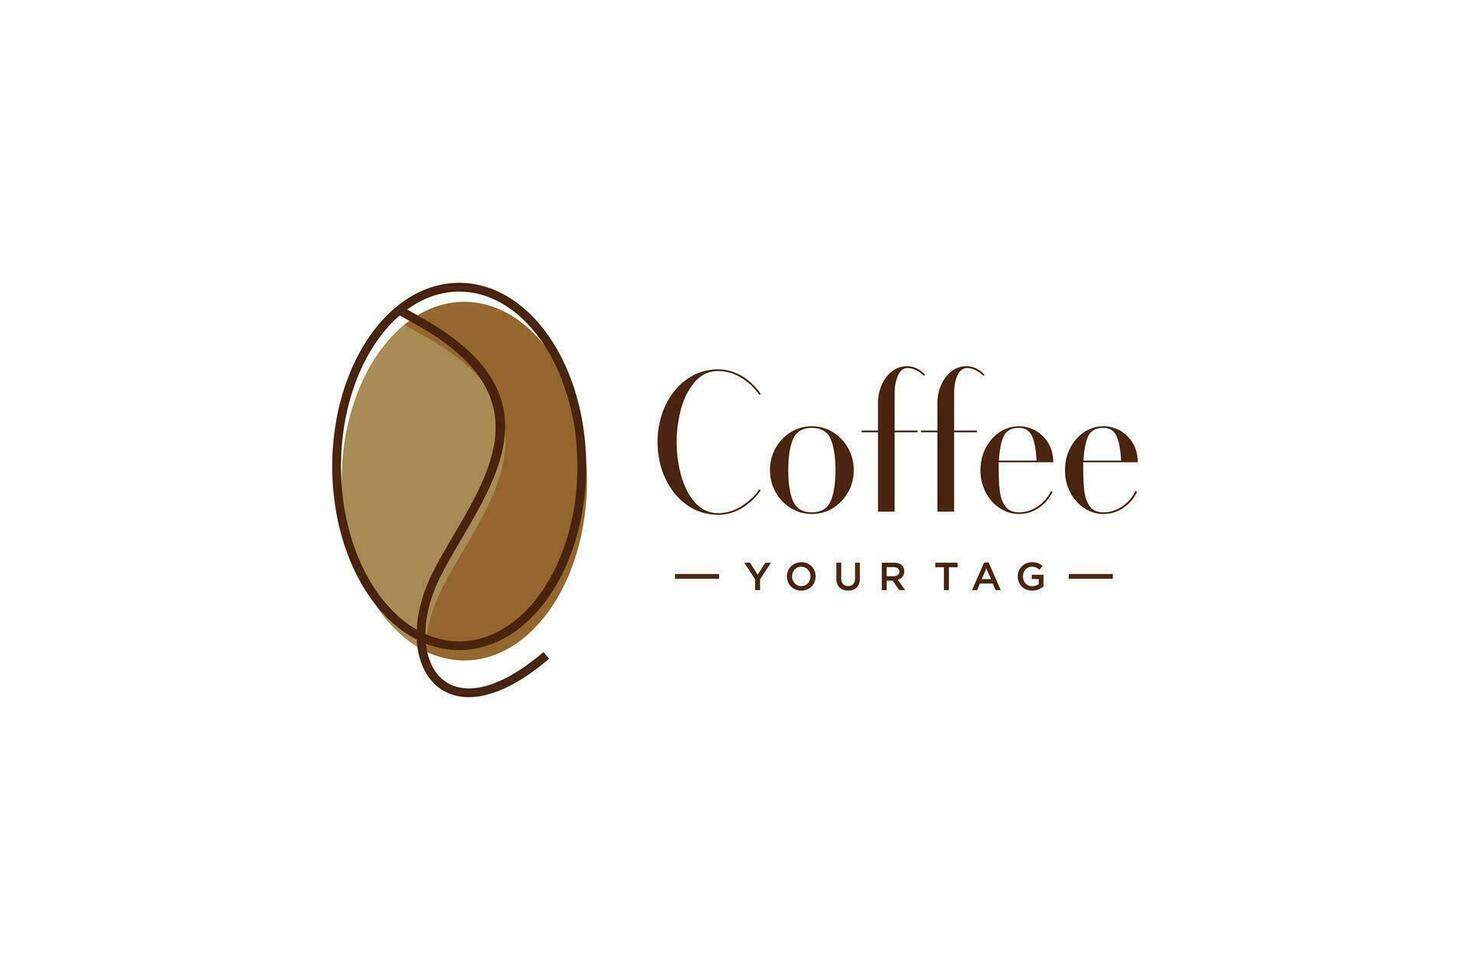 Coffee logo design vector idea with creative concept